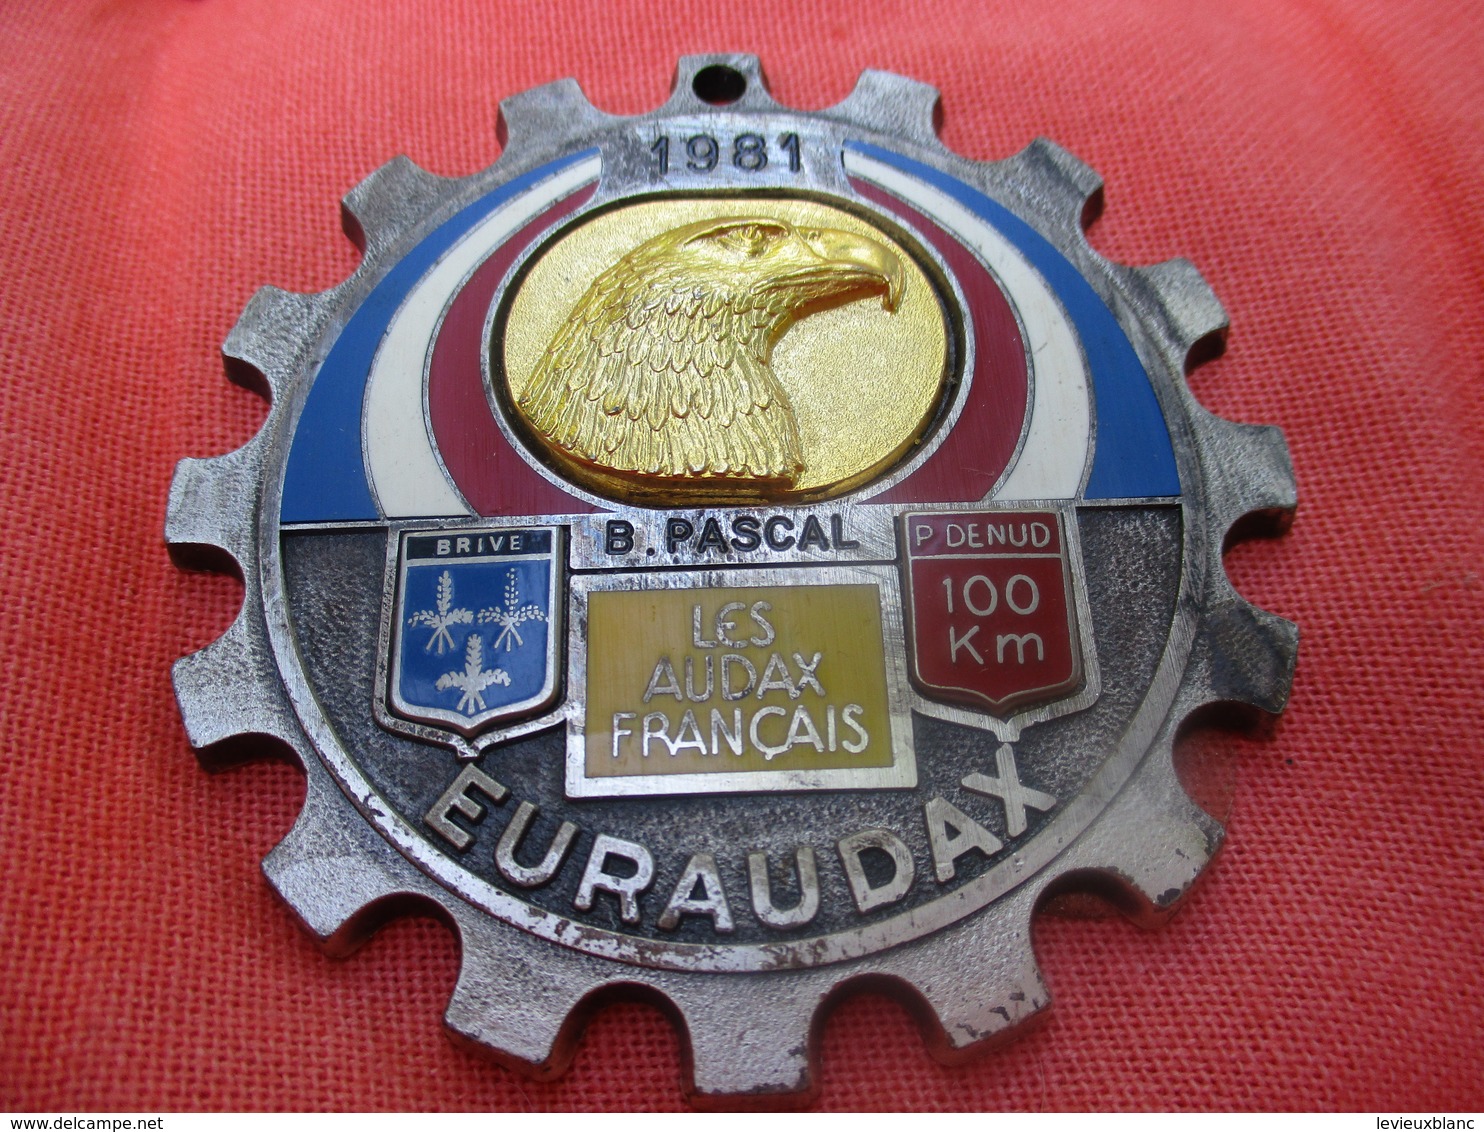 Médaille De Sport/Cyclisme/ EURAUDAX/100 KM P Denud/ Tête D'Aigle/ BRIVE/Les Audax Français/1981    SPO290 - Cyclisme